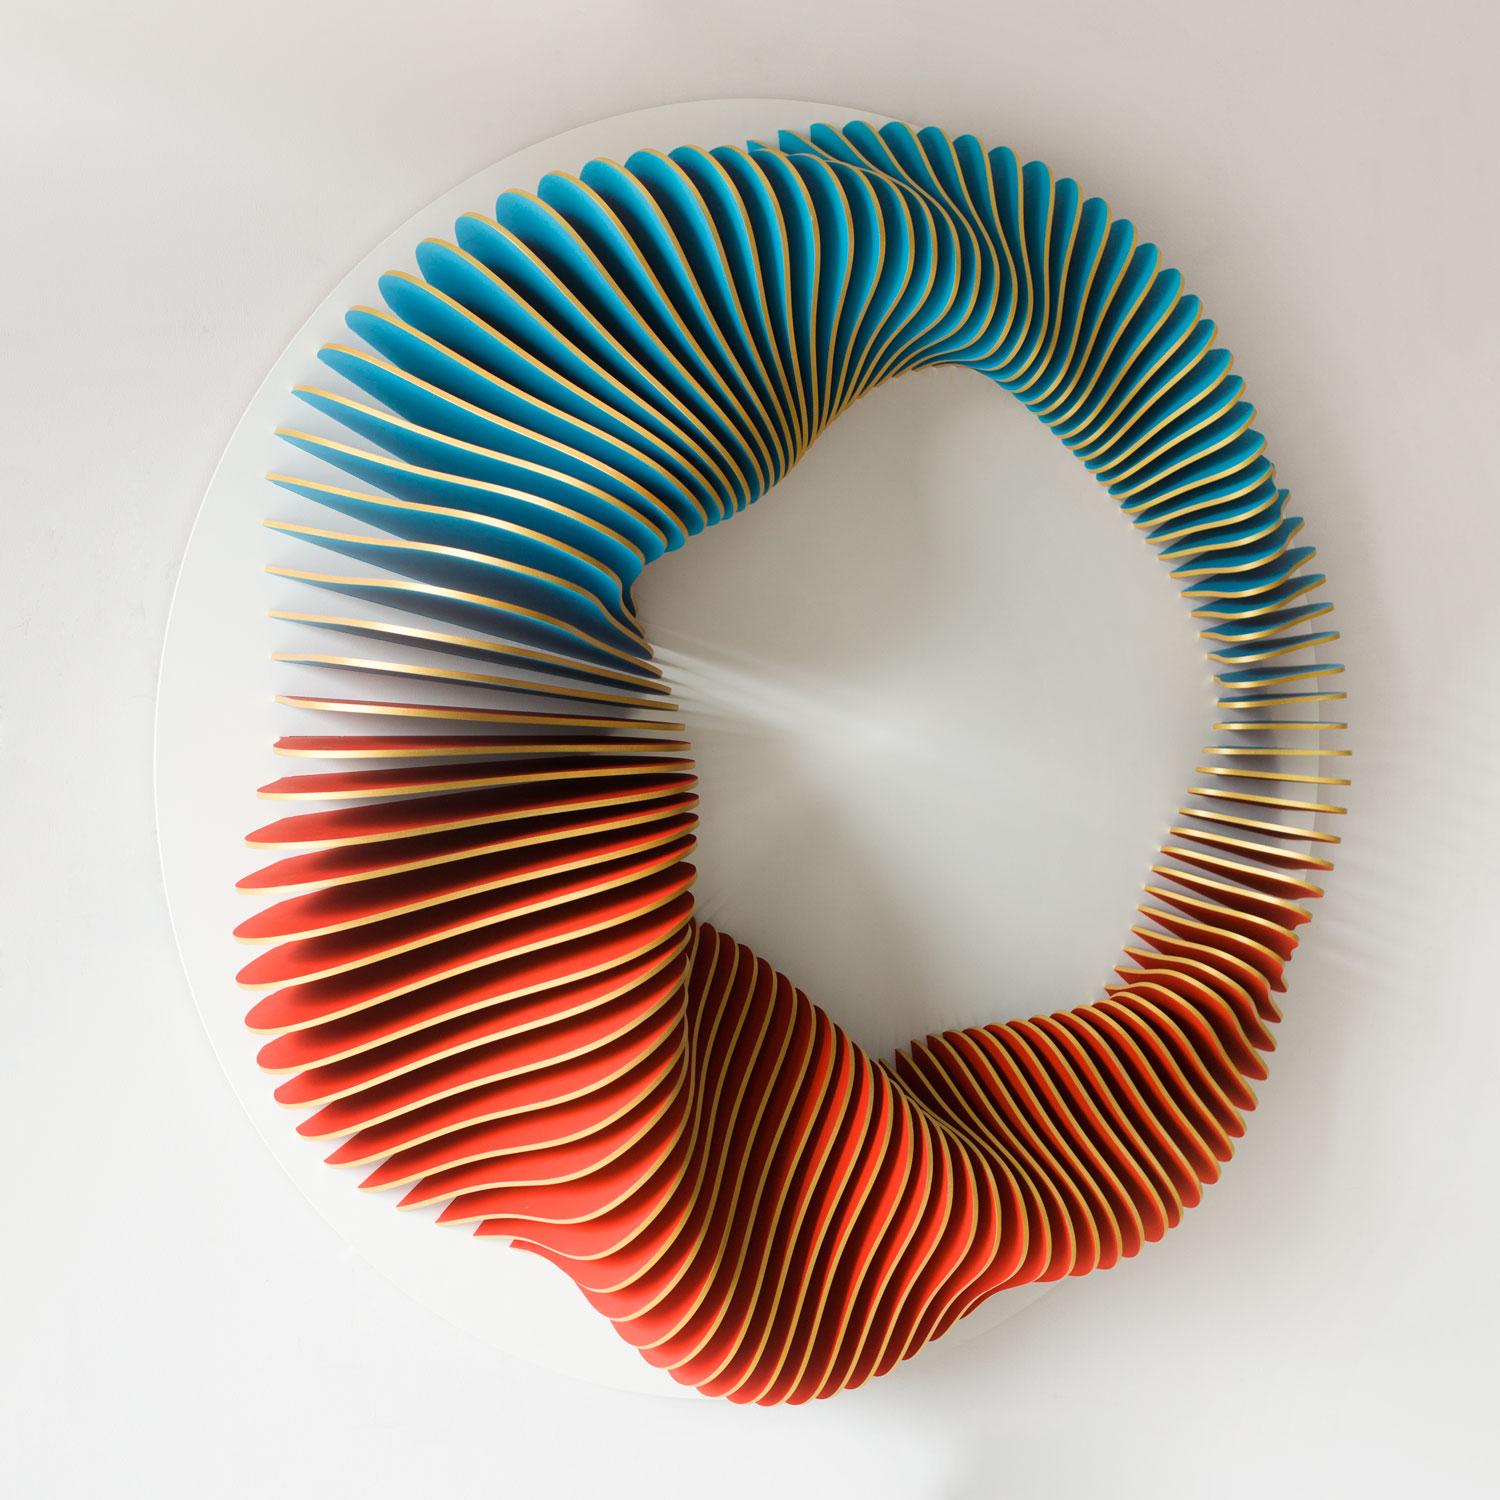 Anna Kruhelska Abstract Sculpture - Constant Change 58